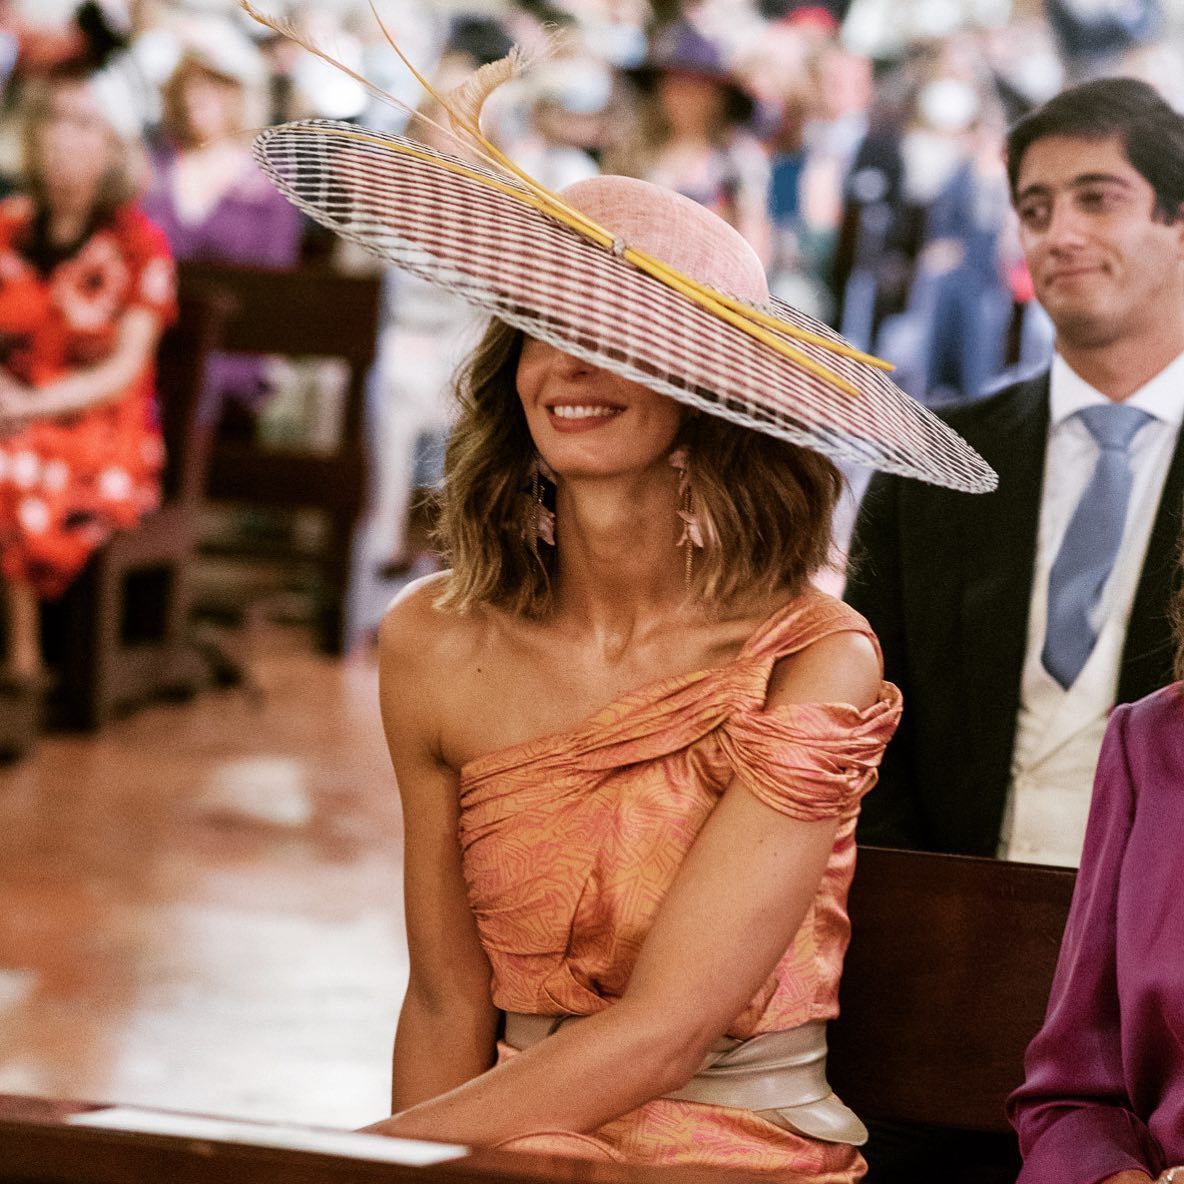 Mónica Corsini en la boda de su hermana María en septiembre de 2021.